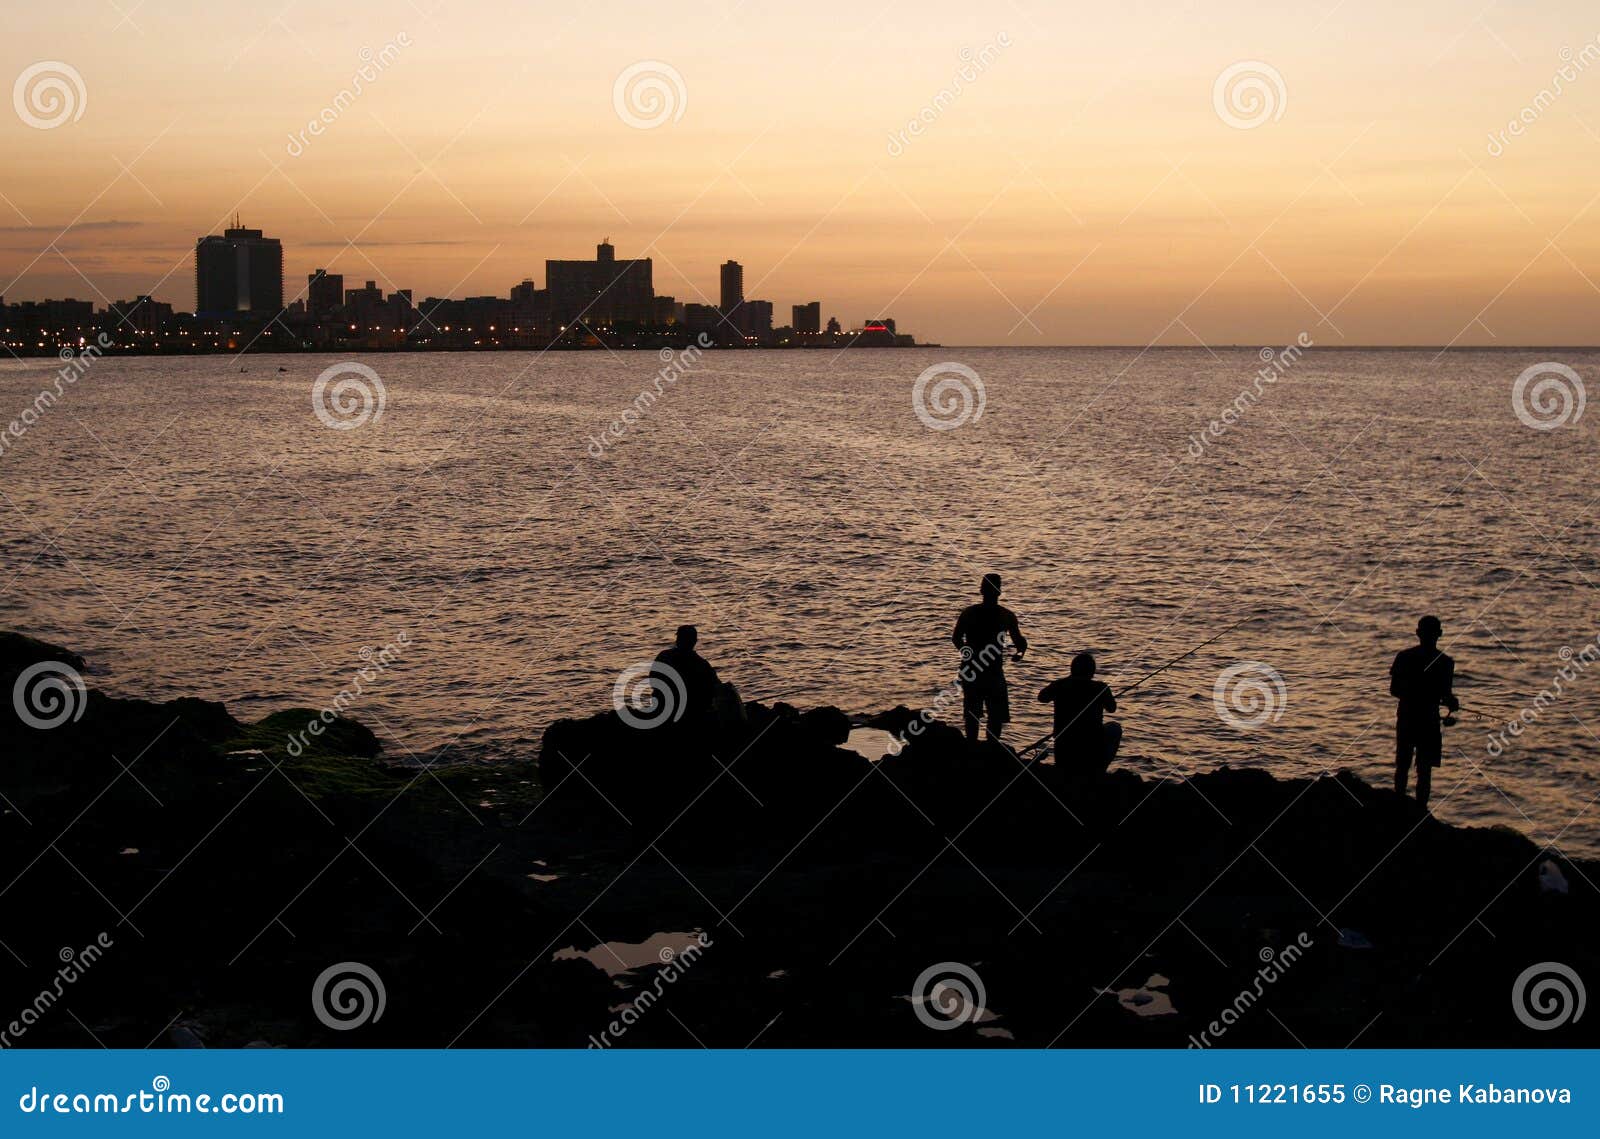 havana seaside (malecon) at sunset, cuba